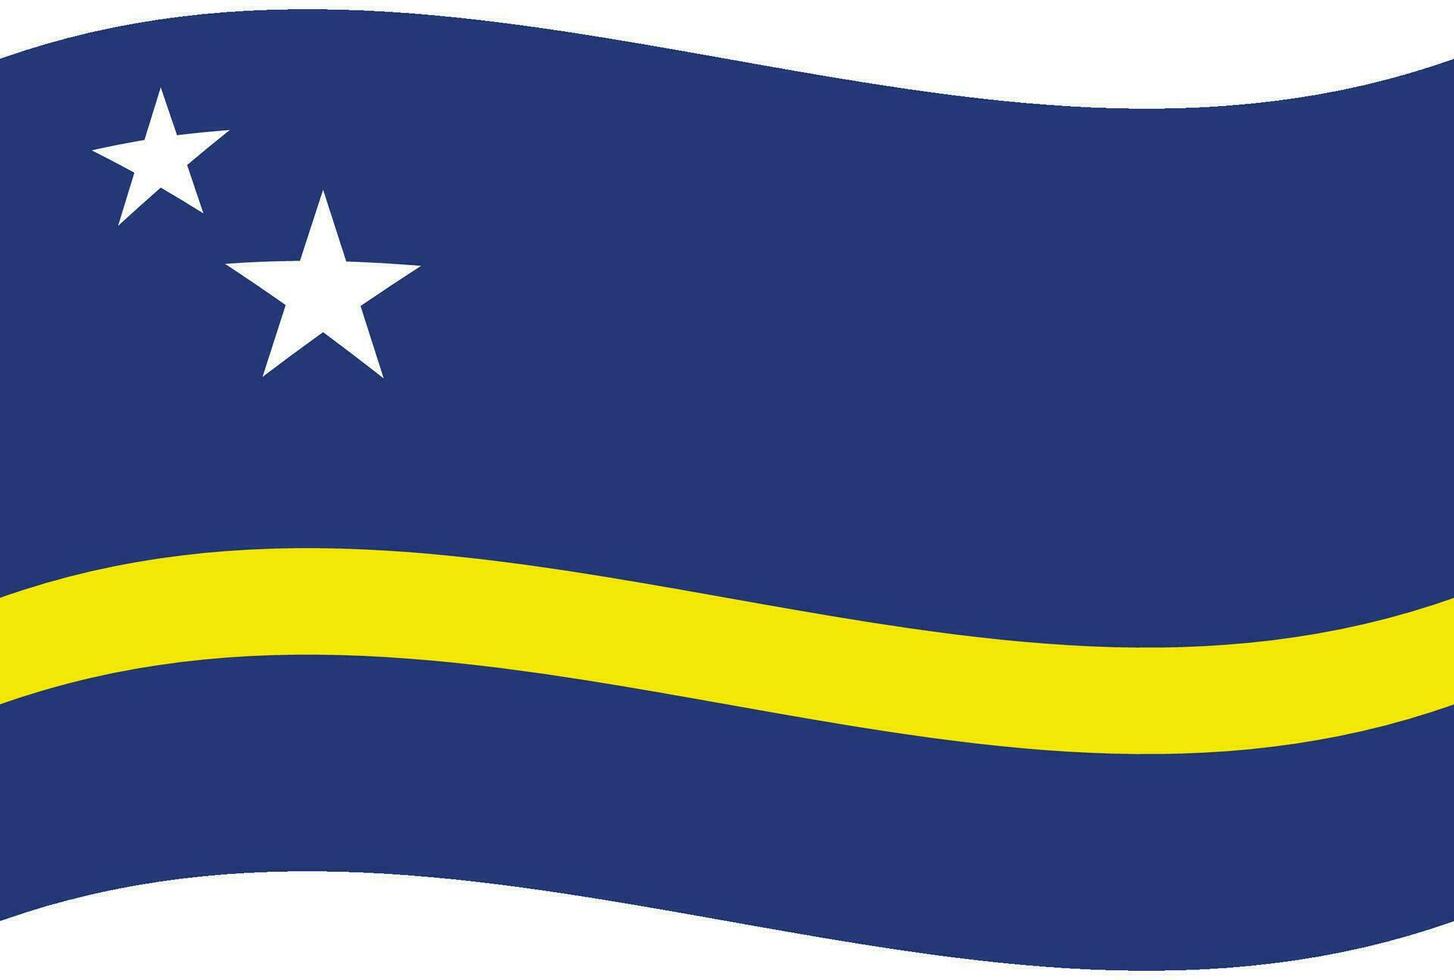 Curacao flag wave. Curacao flag. Flag of Curacao vector